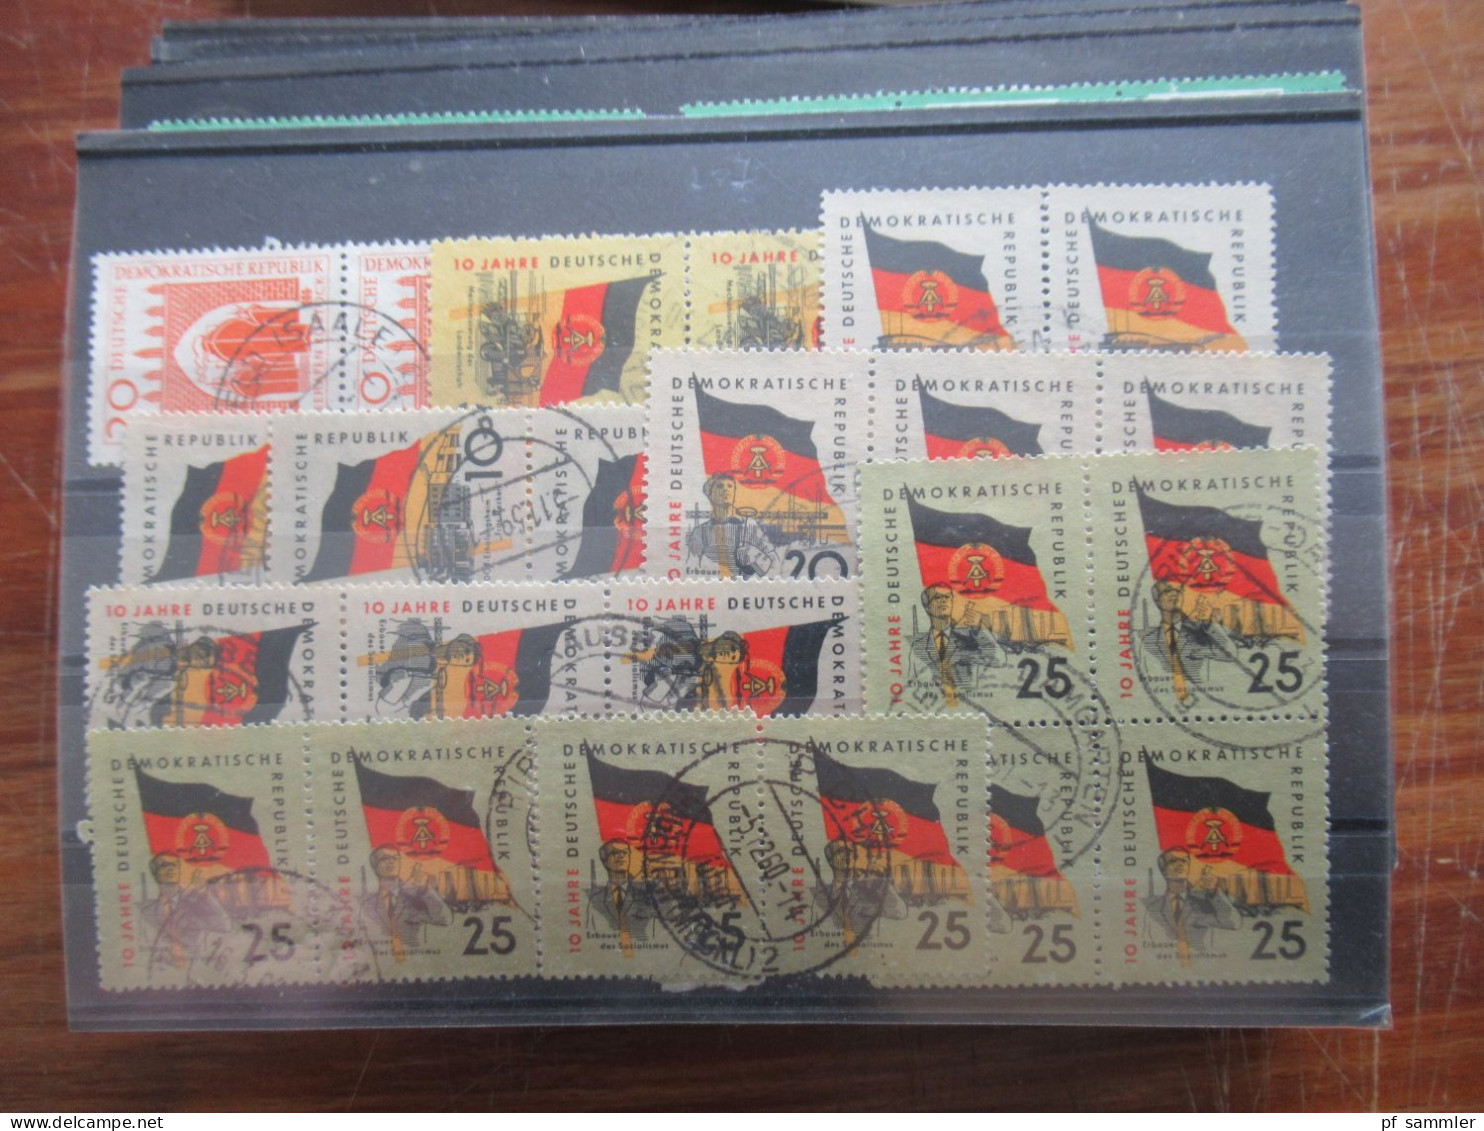 DDR ab 1950er Jahre Steckkartenposten mit einigen Randstücken gestempelt und ganz wenige ungebraucht! Fundgrube!!